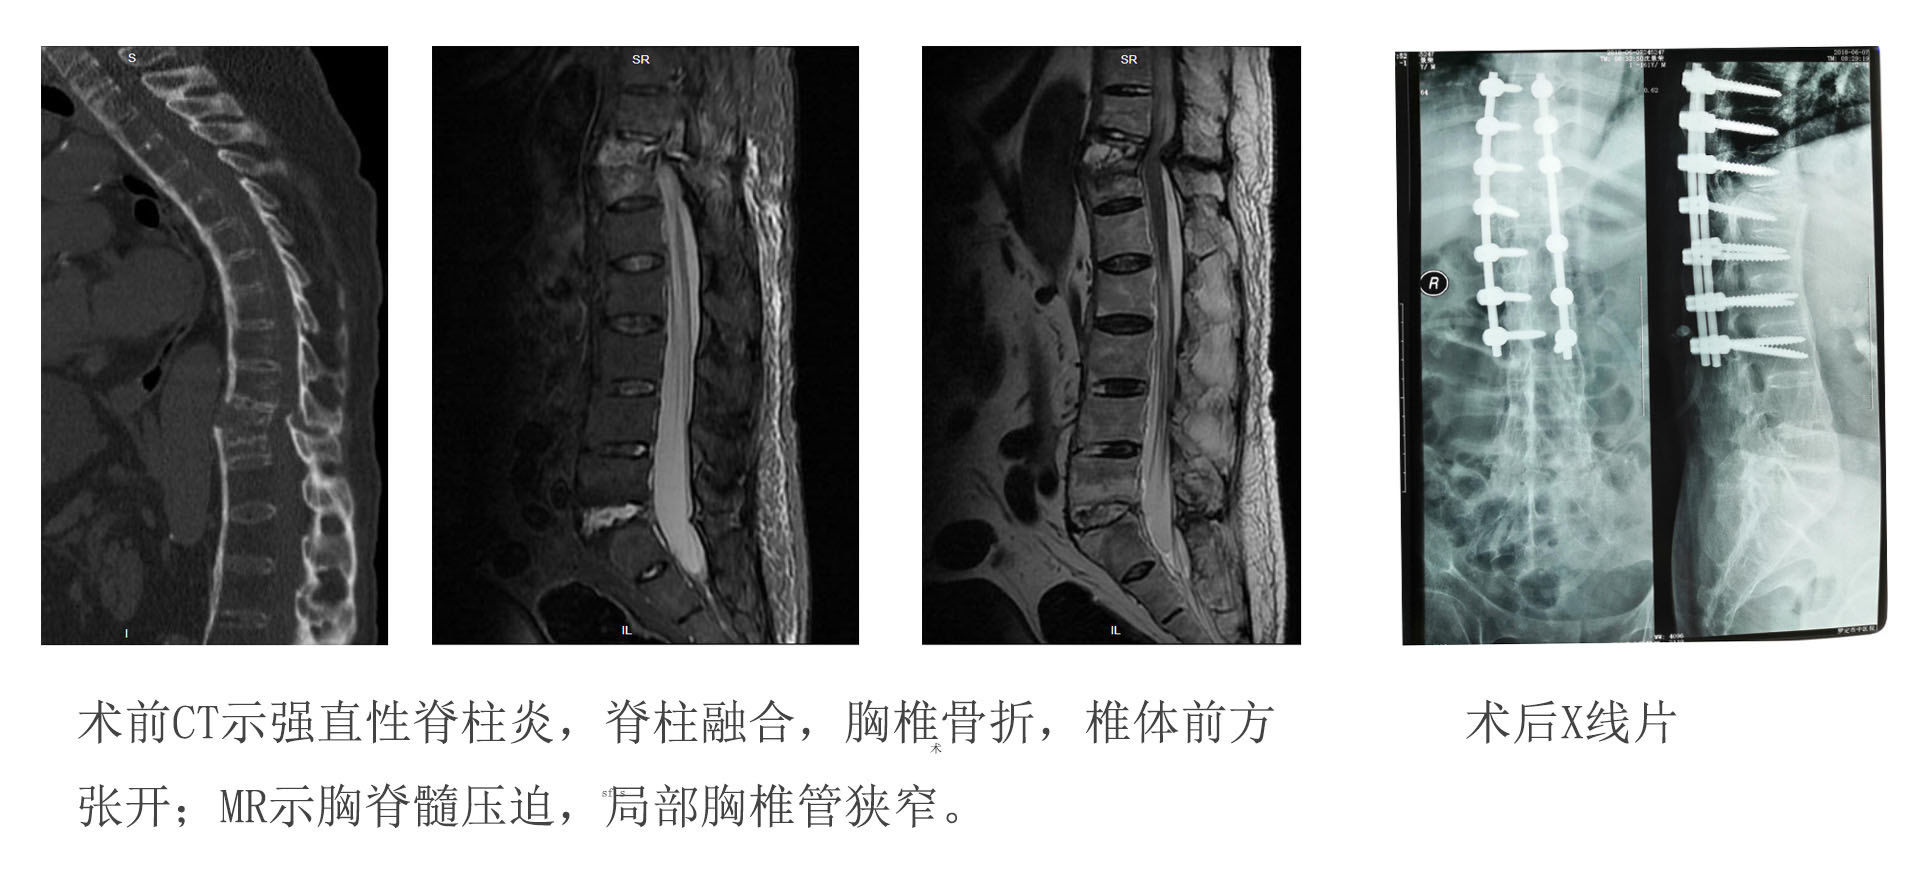 强直性脊柱炎发生胸椎结核并病理性骨折引起脊髓损伤原创